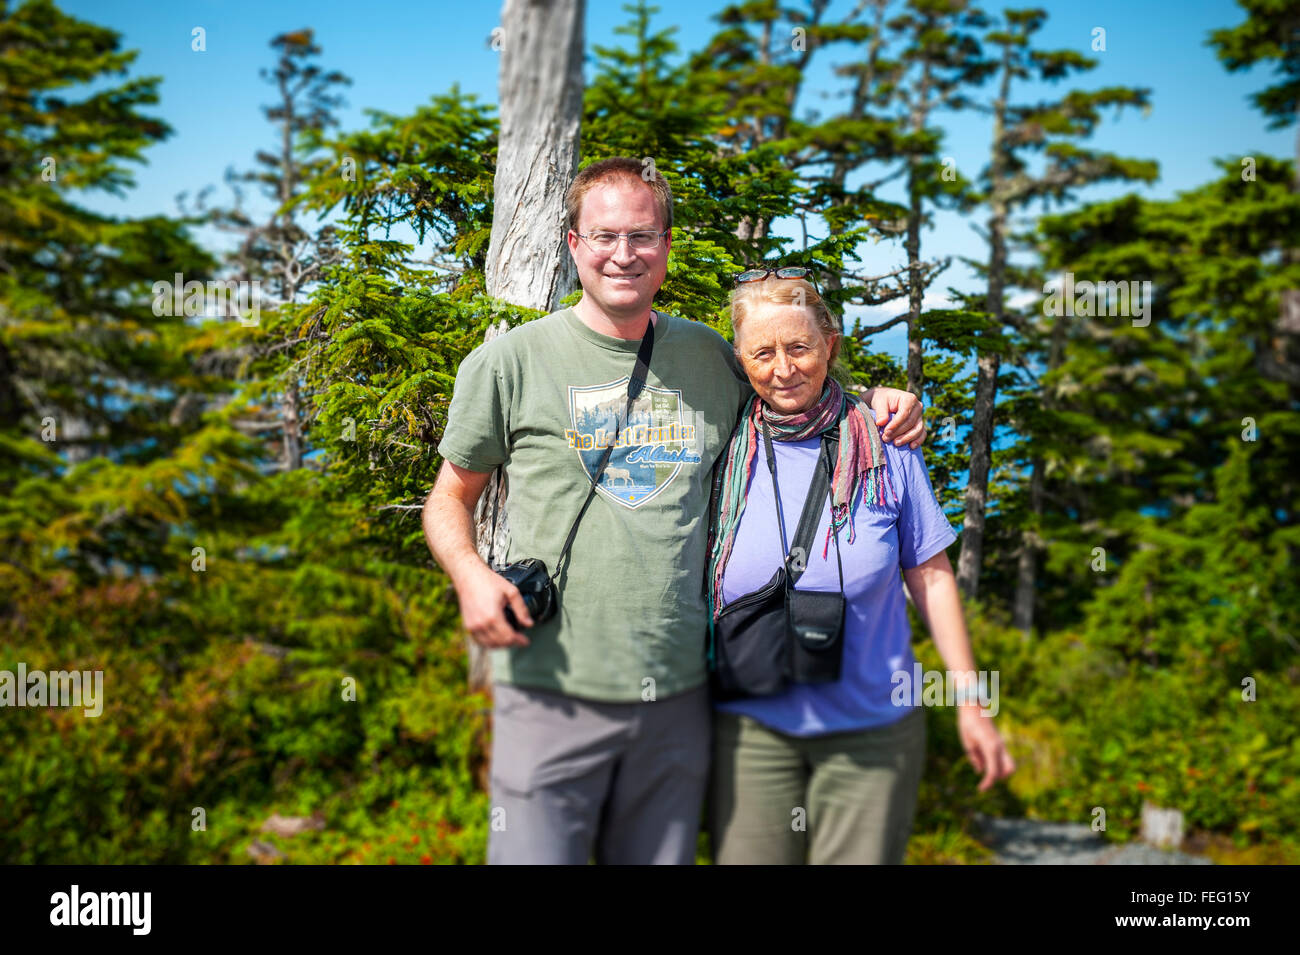 Madre e figlio turisti provenienti dalla Svizzera godendo di una escursione sul porto montagna vicino a Sitka, Alaska, Stati Uniti d'America. Fotografia di Jeffrey Wic Foto Stock